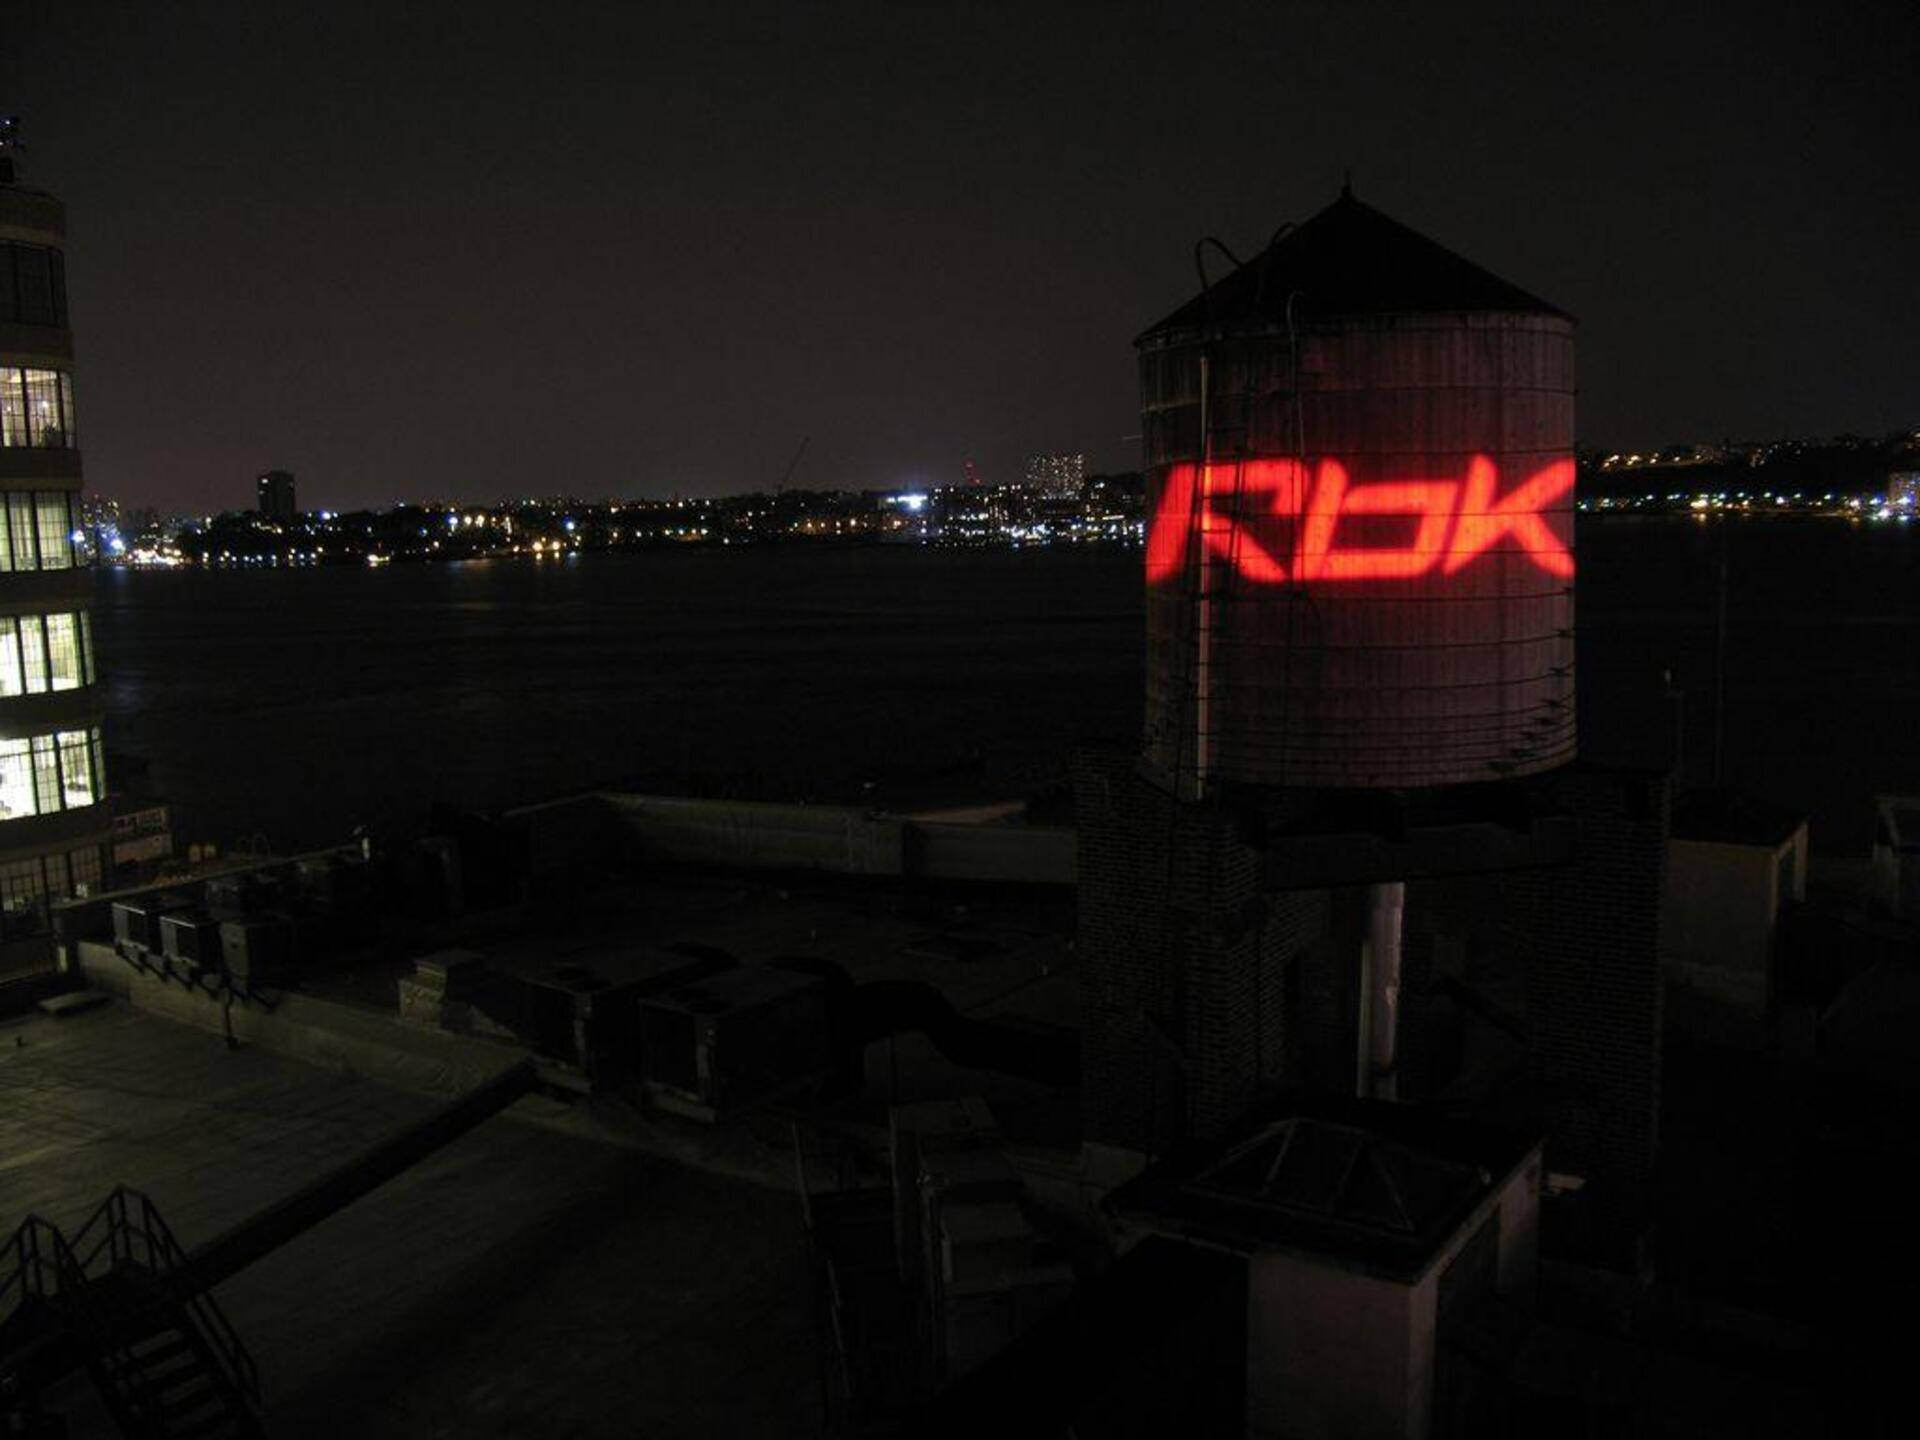 Reebok Rbk Light At Night